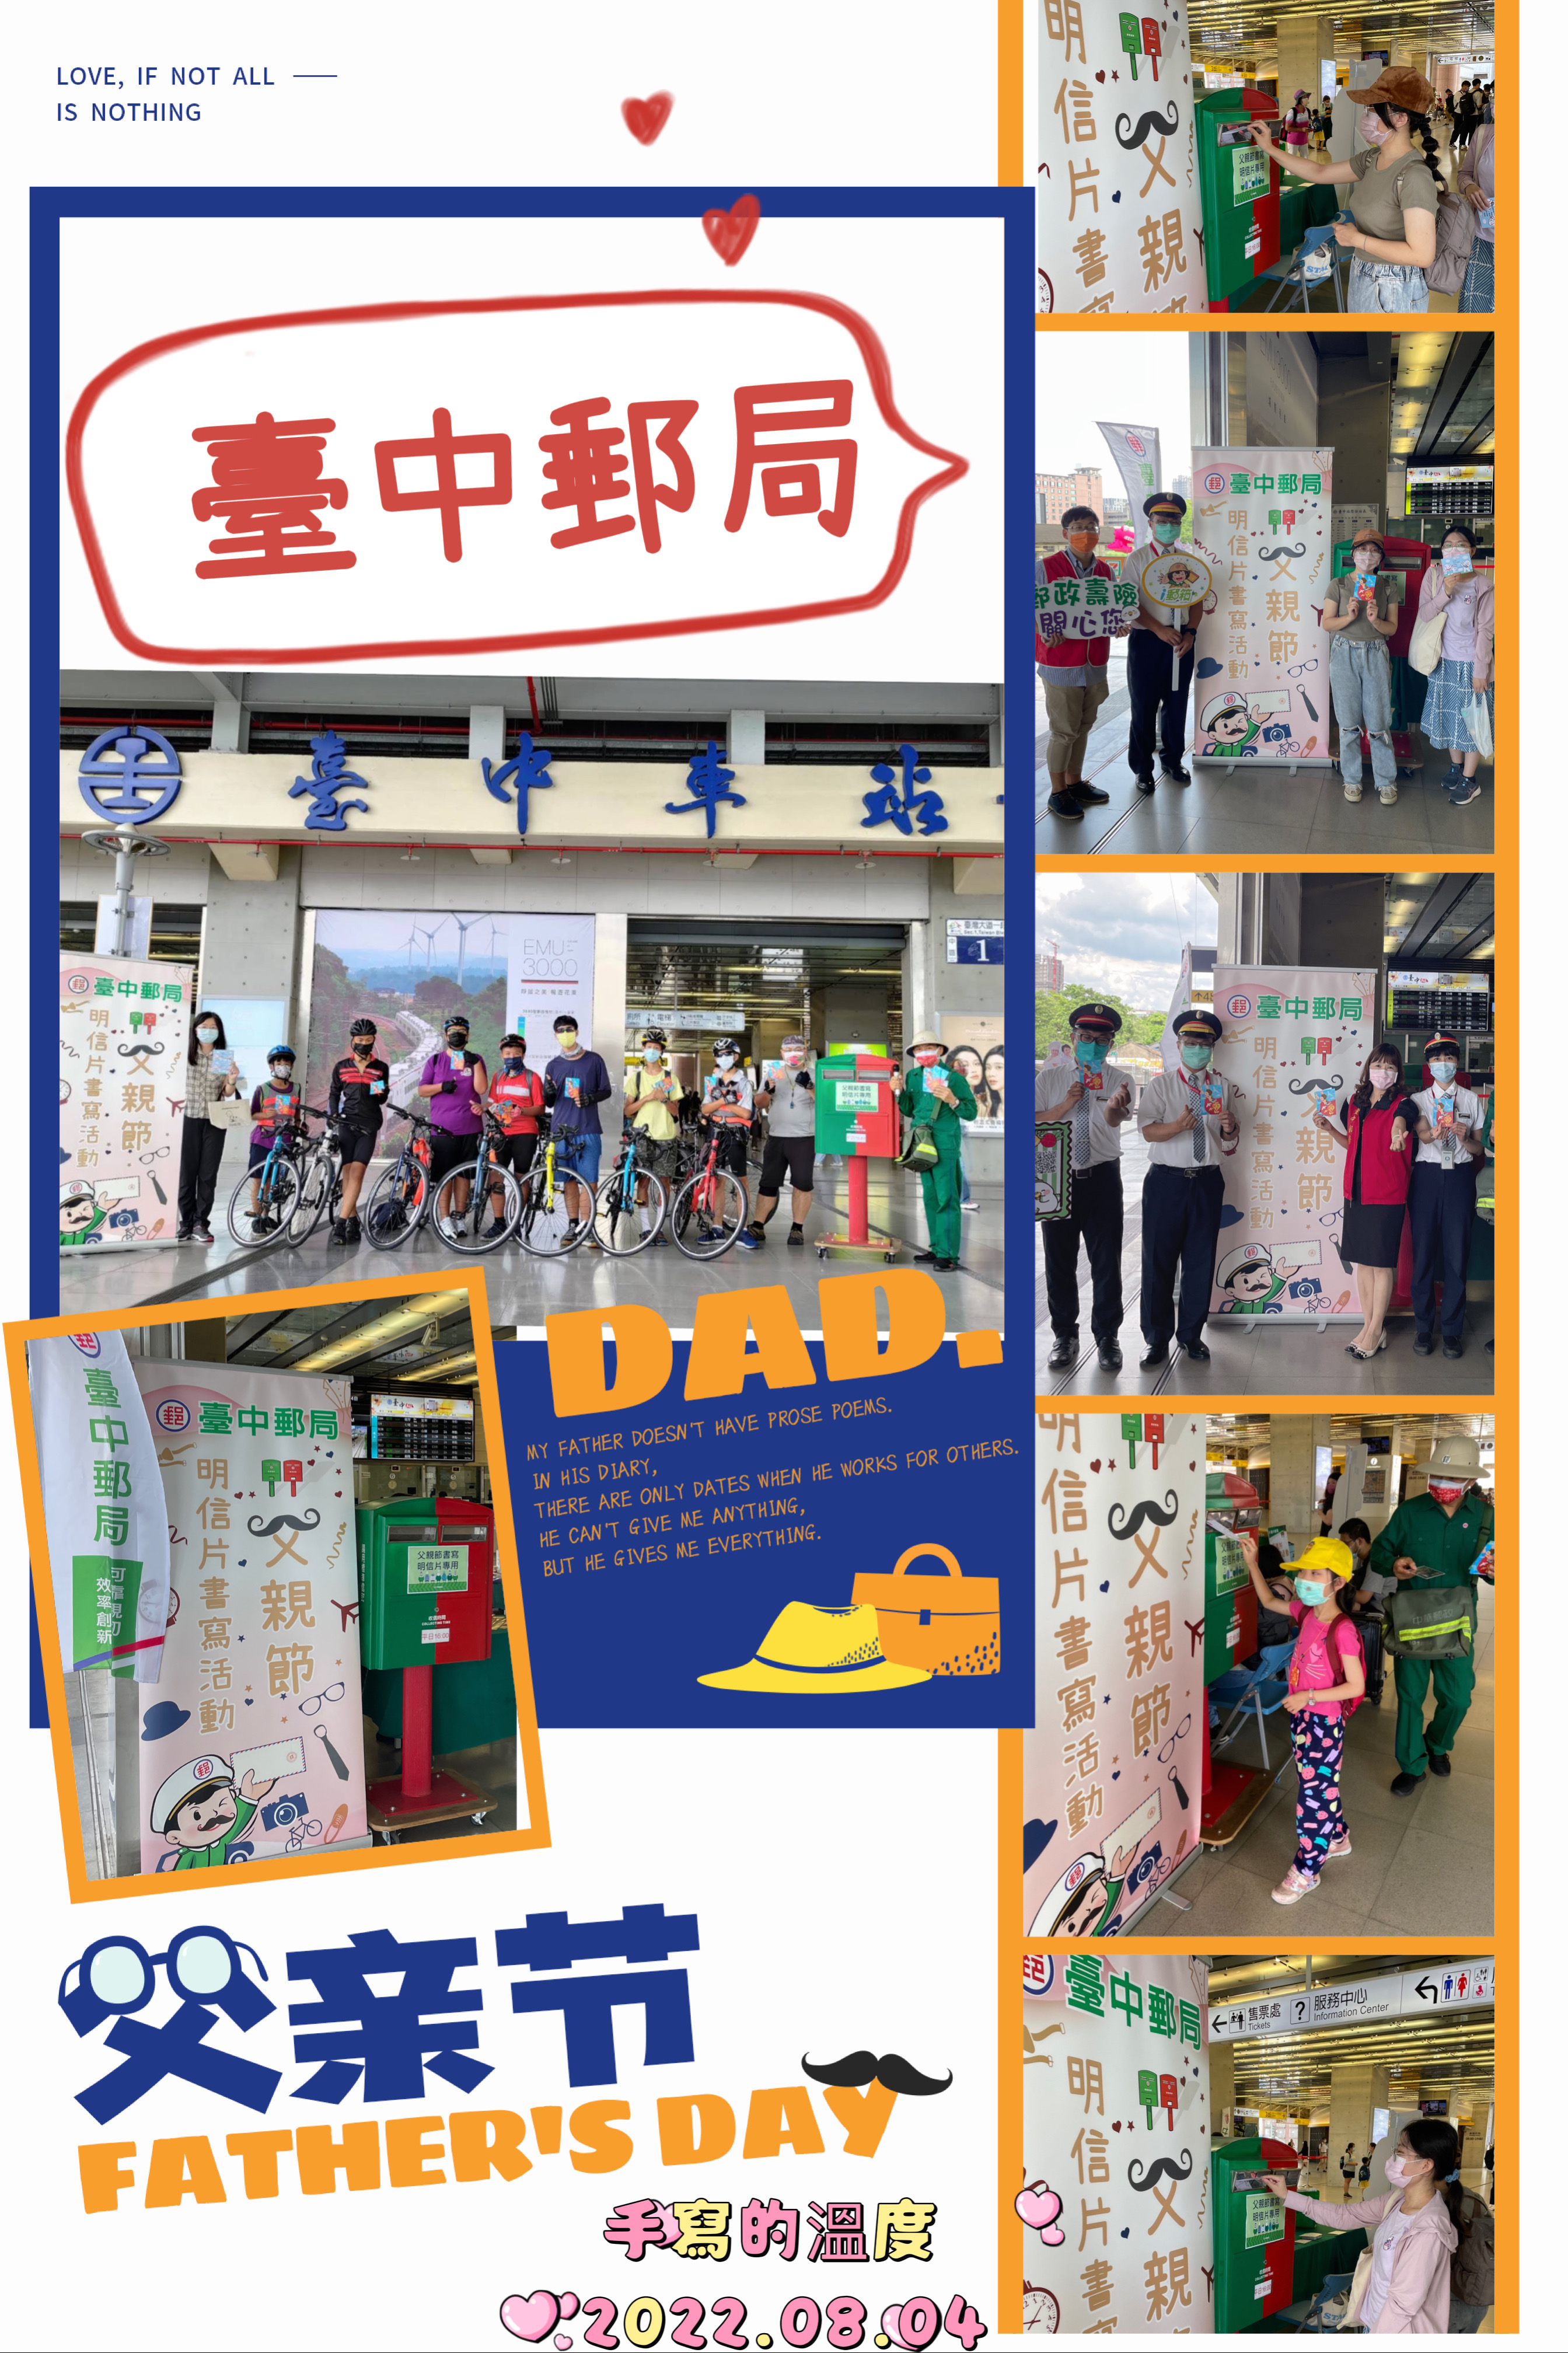 8月-臺中郵局慶祝與臺中車站聯合舉辦 「父親節明信片書寫」感恩活動